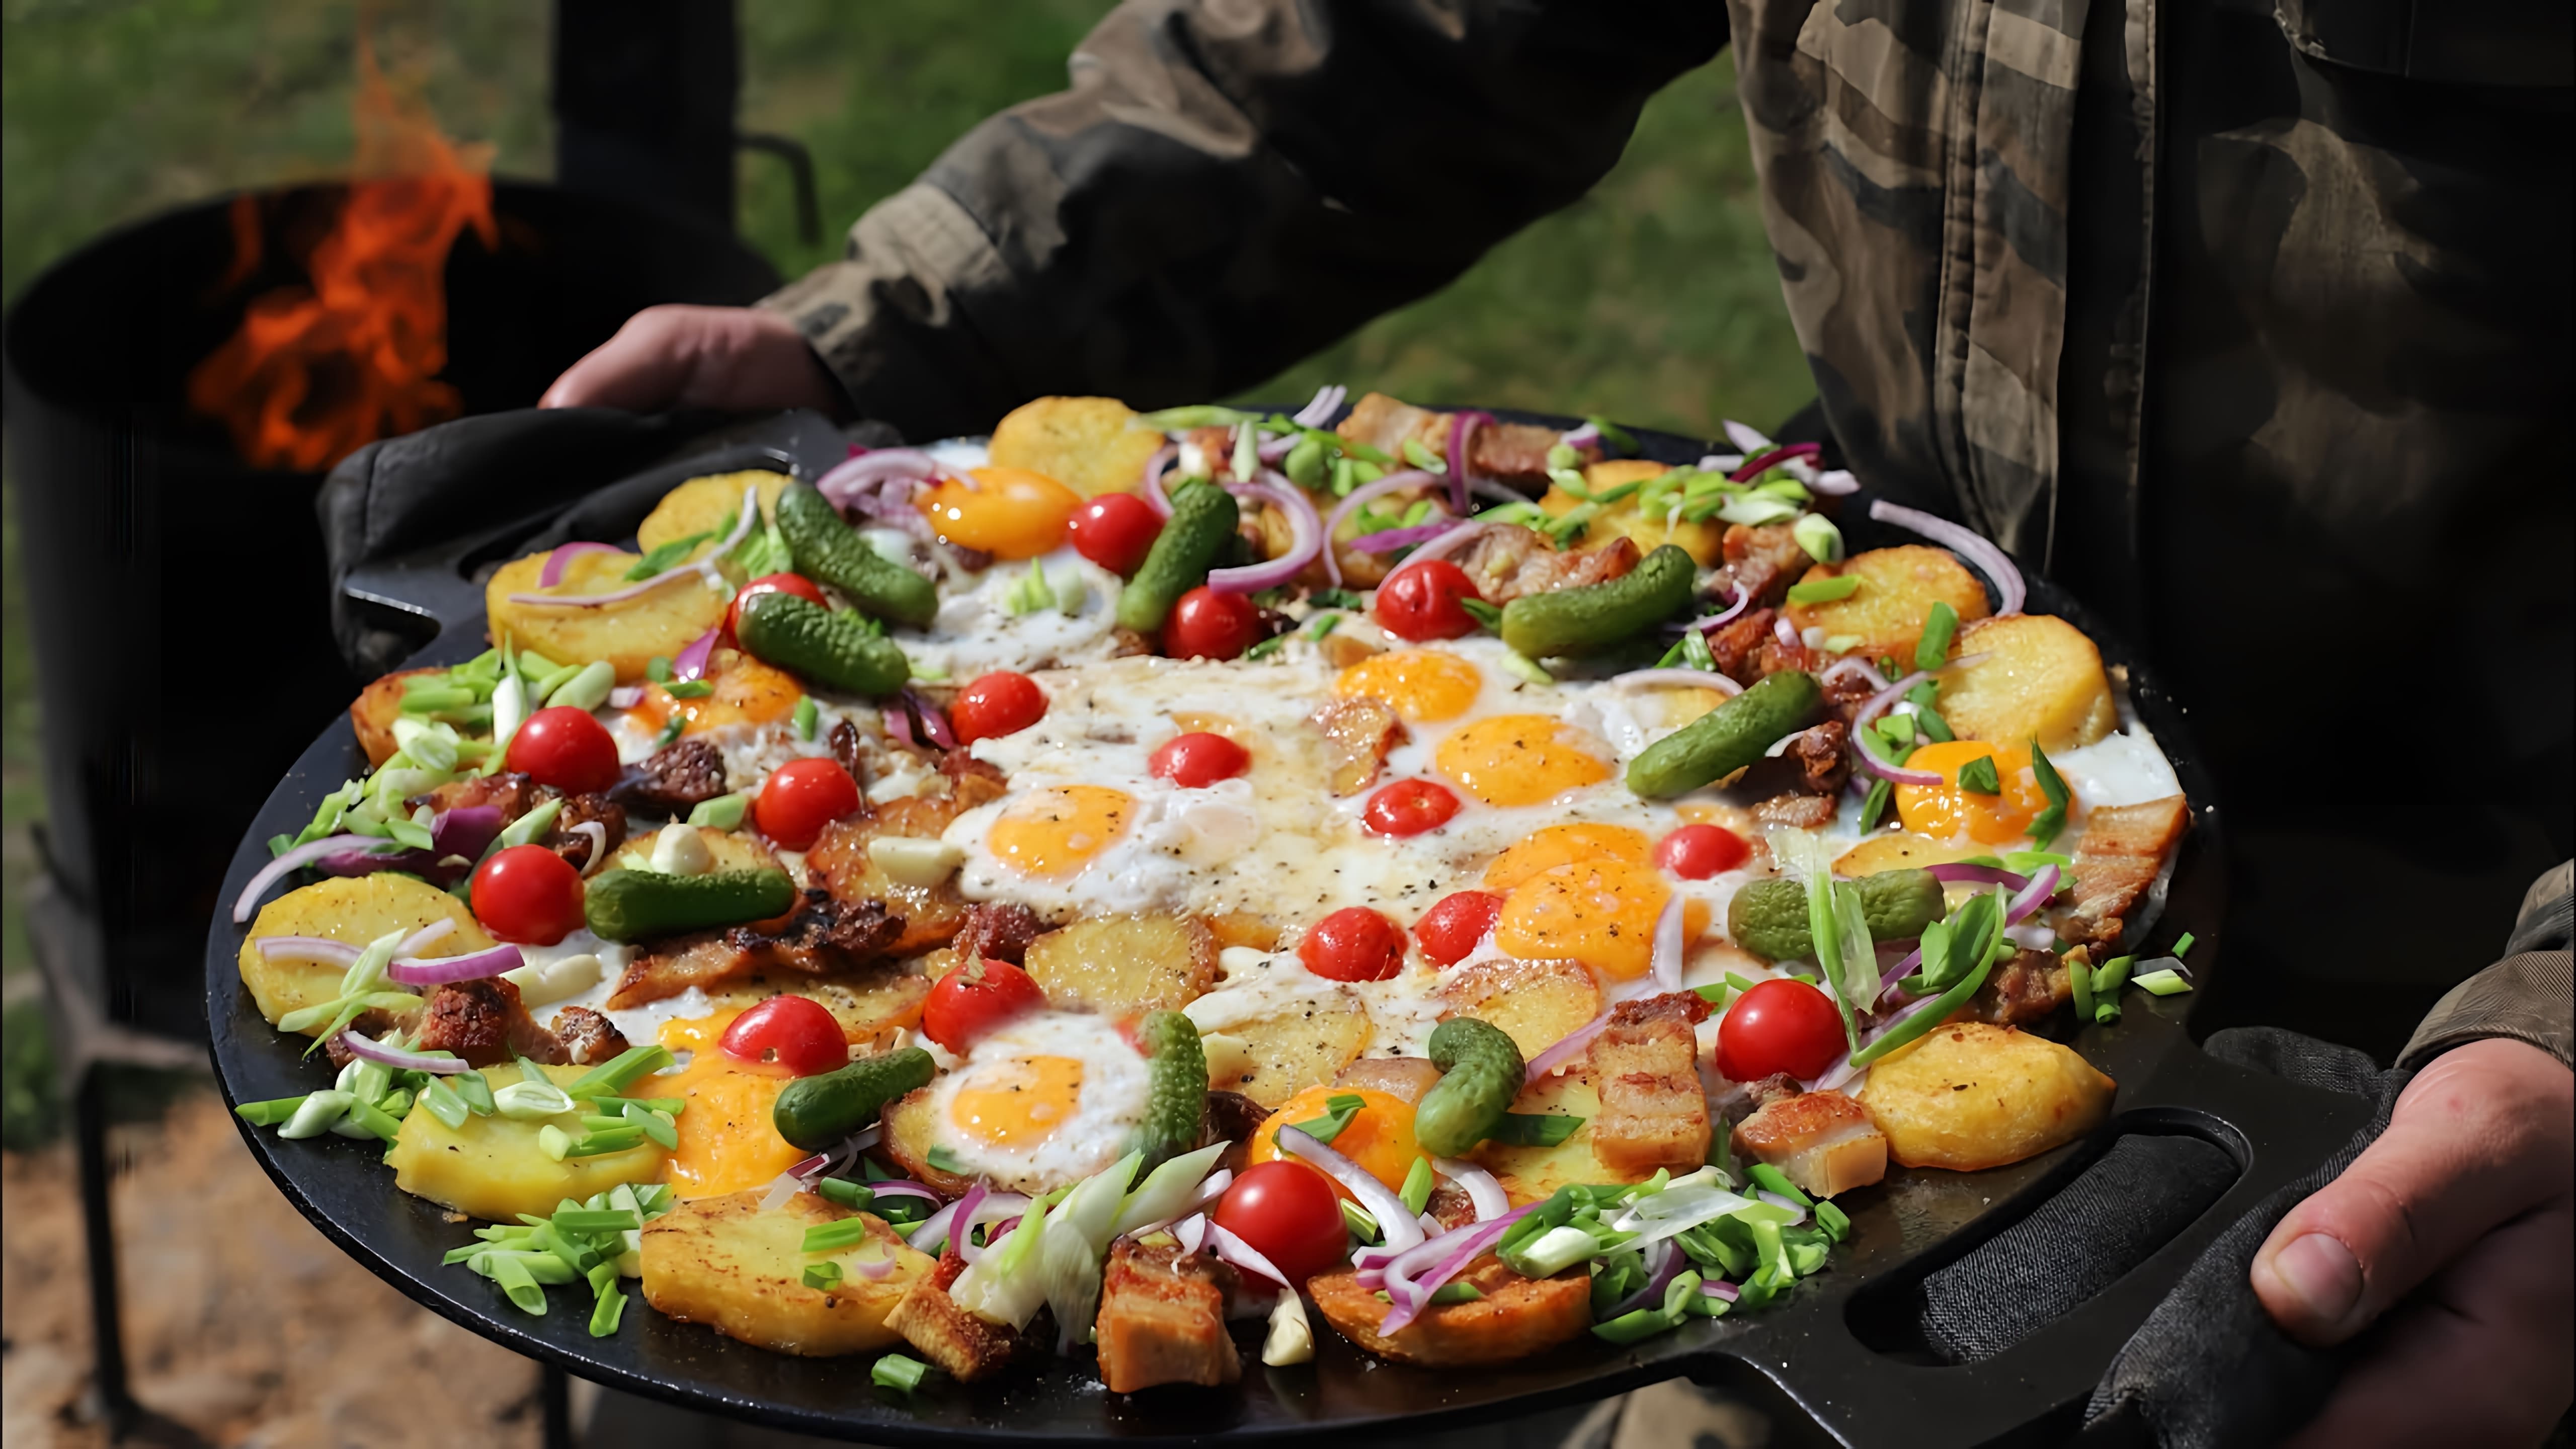 В этом видео демонстрируется процесс приготовления деревенского завтрака на садже